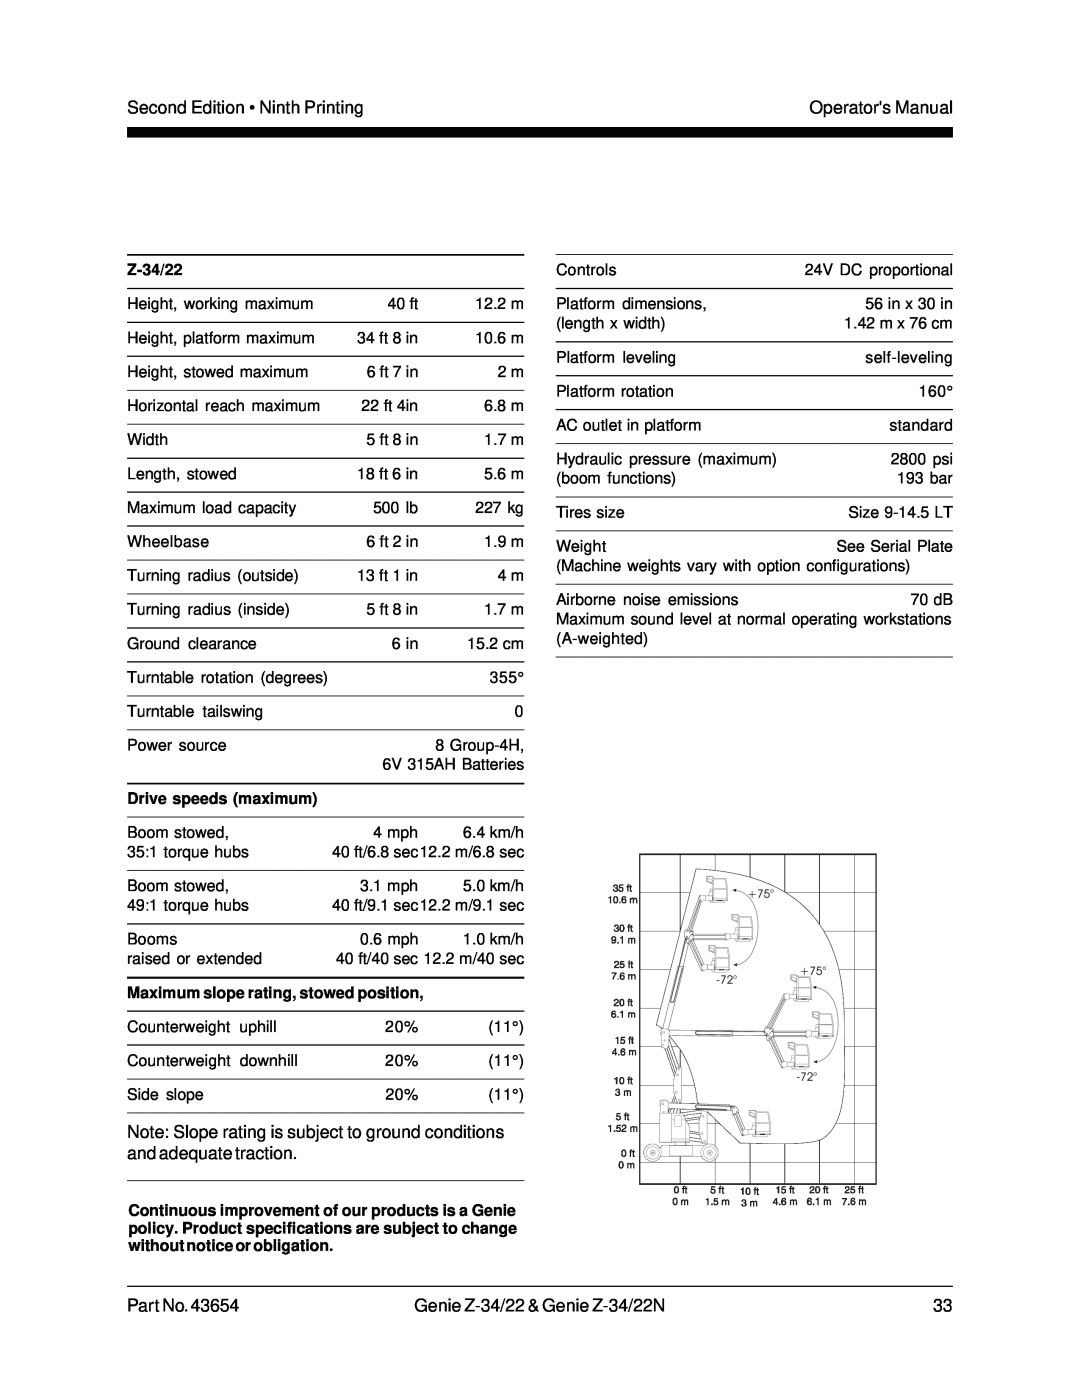 Genie Z-34, Z-22N manual Second Edition Ninth Printing, Operators Manual, Part No.43654, Genie Z-34/22 & Genie Z-34/22N 